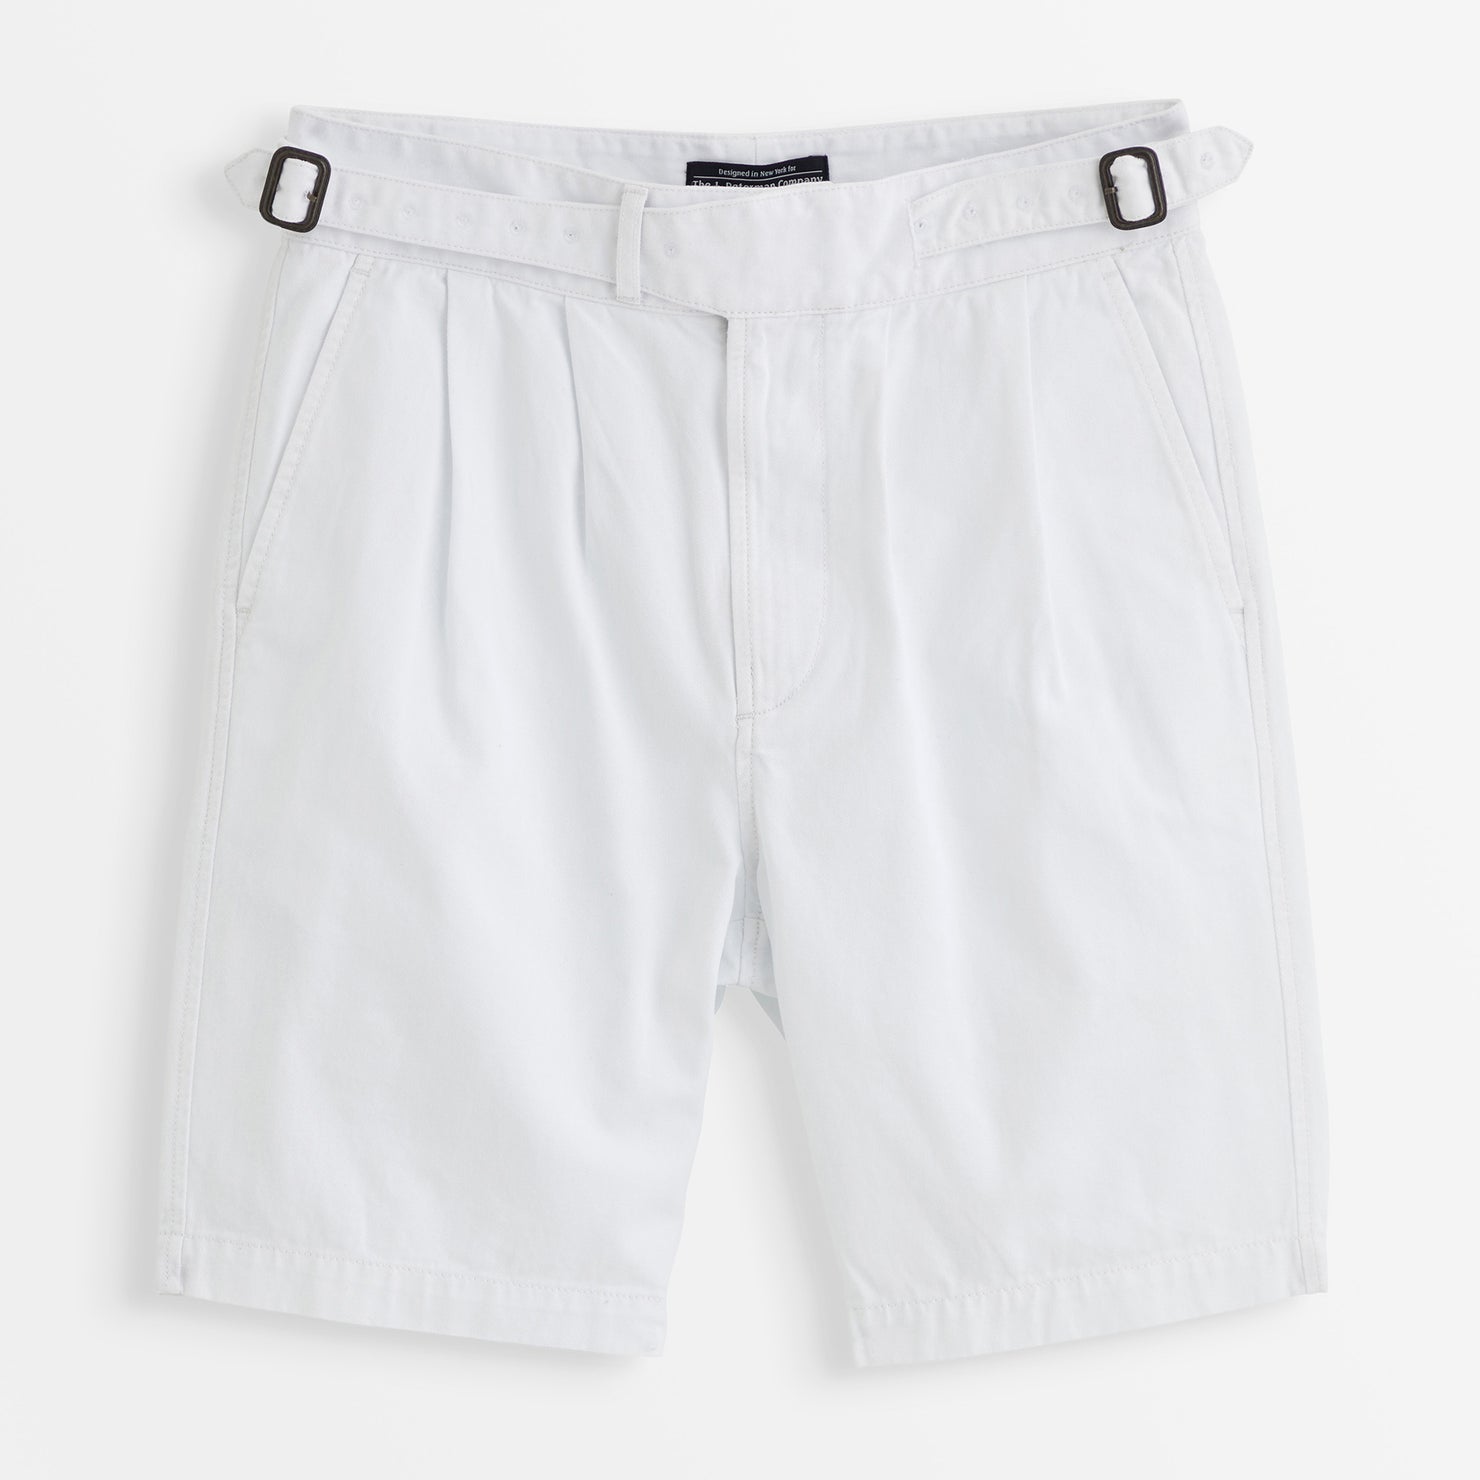 Gurkha Shorts - White / 36